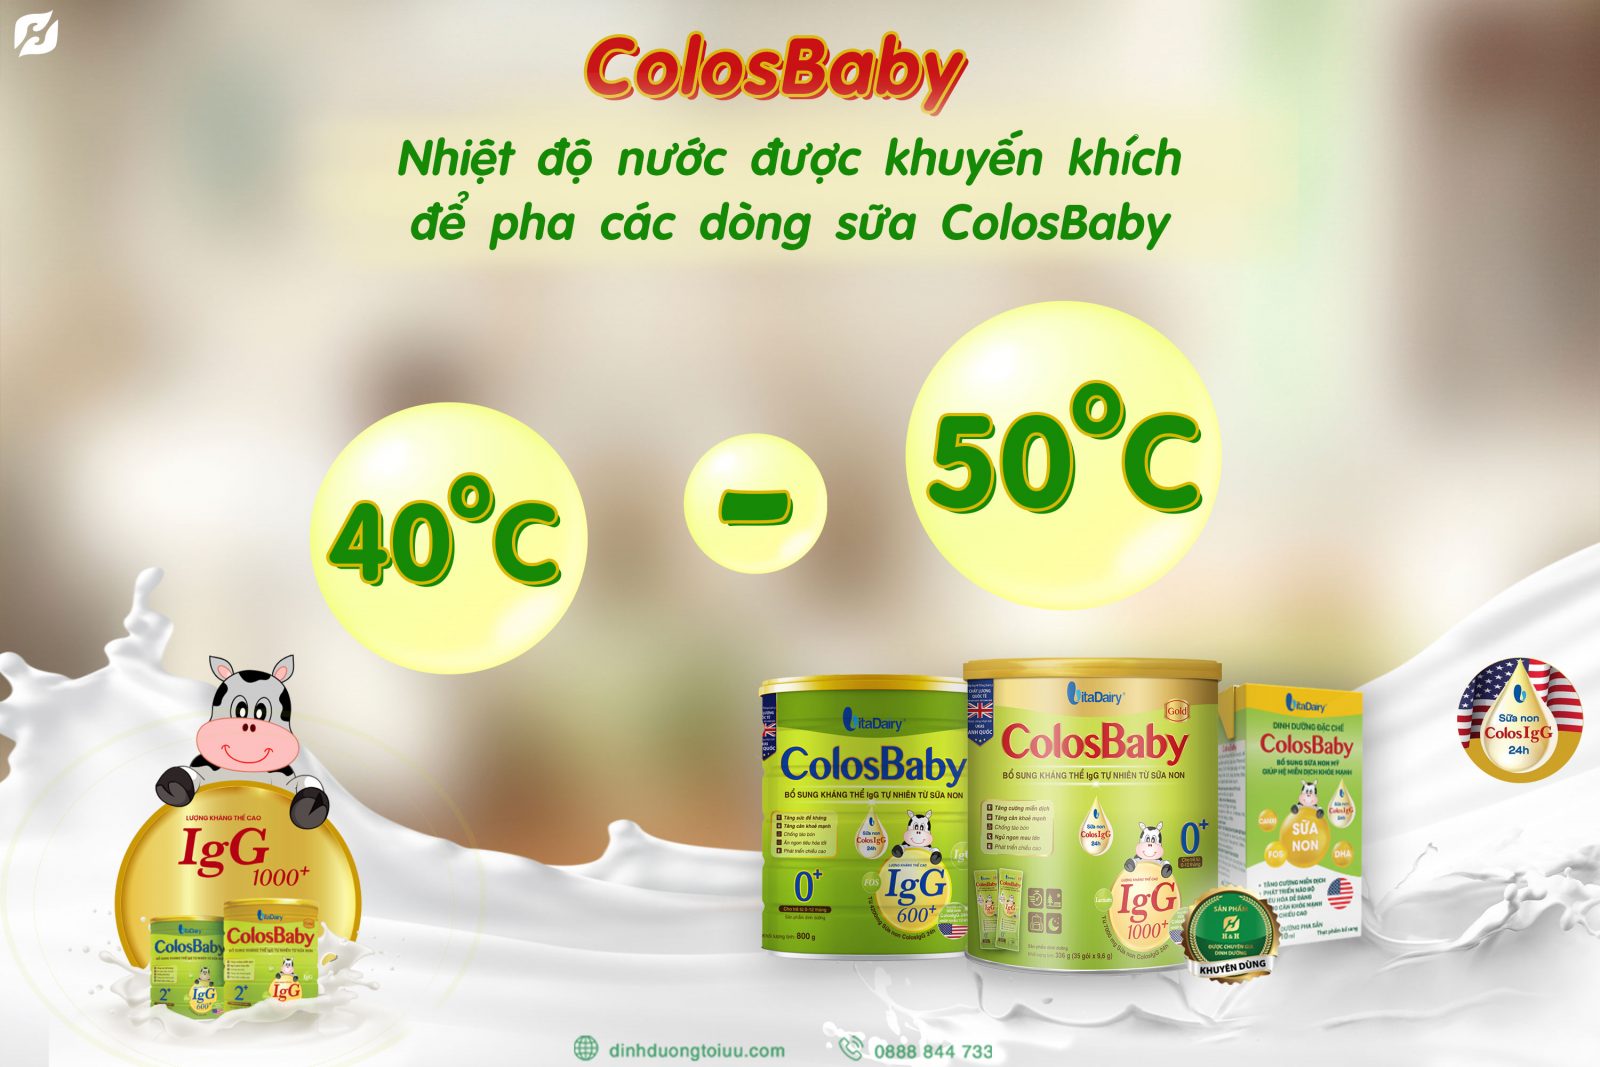 Nhiệt độ nước được khuyến khích để pha các dòng sữa ColosBaby là từ 40 đến 50℃